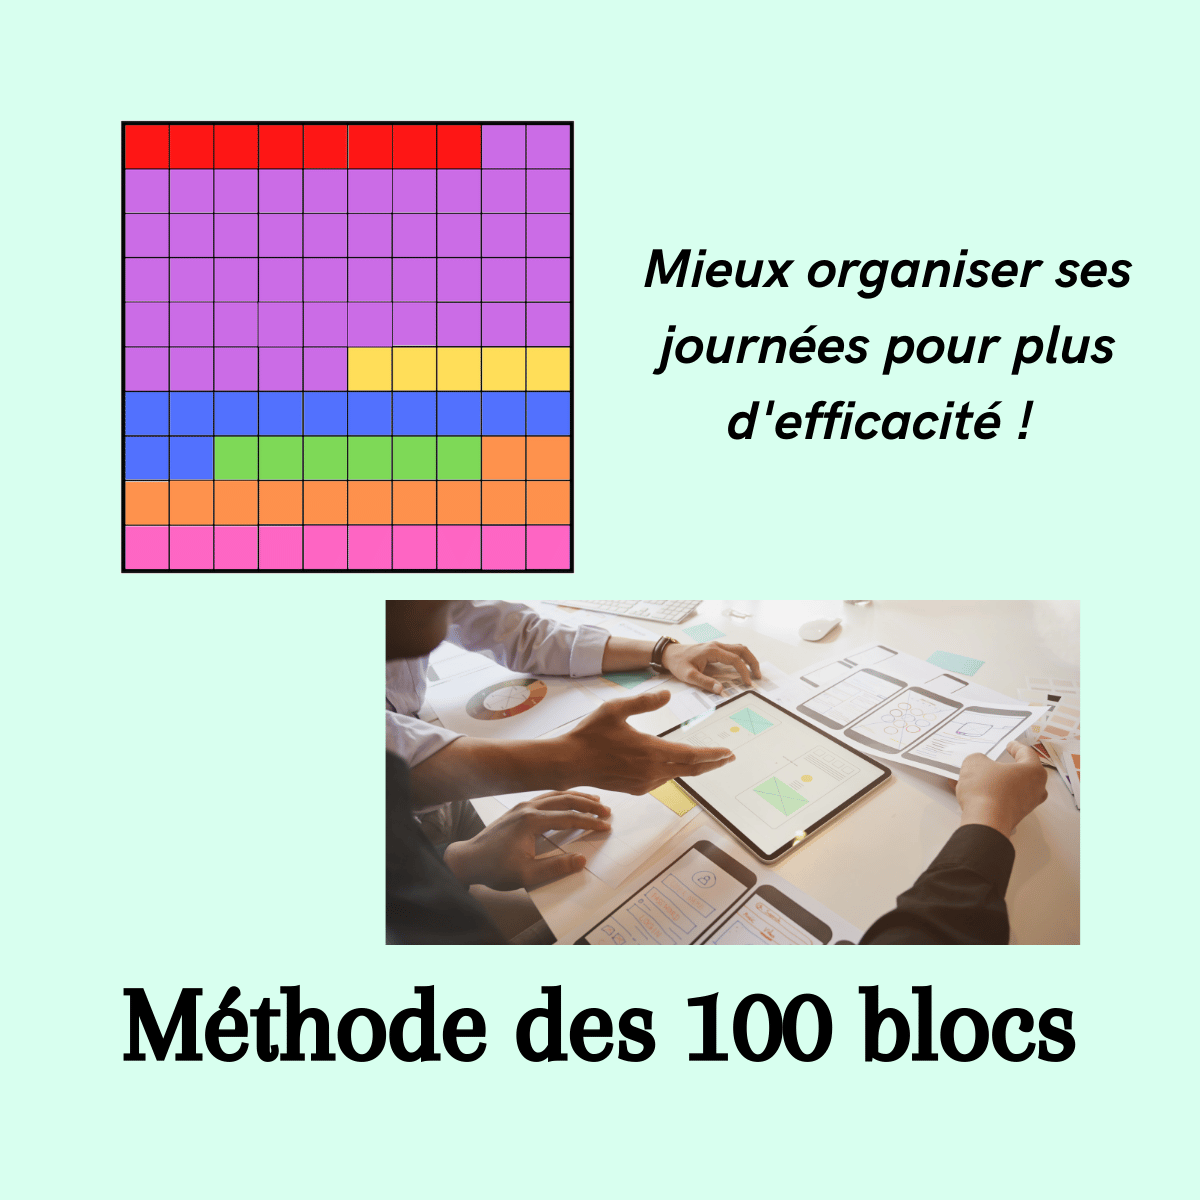 méthode des 100 blocs